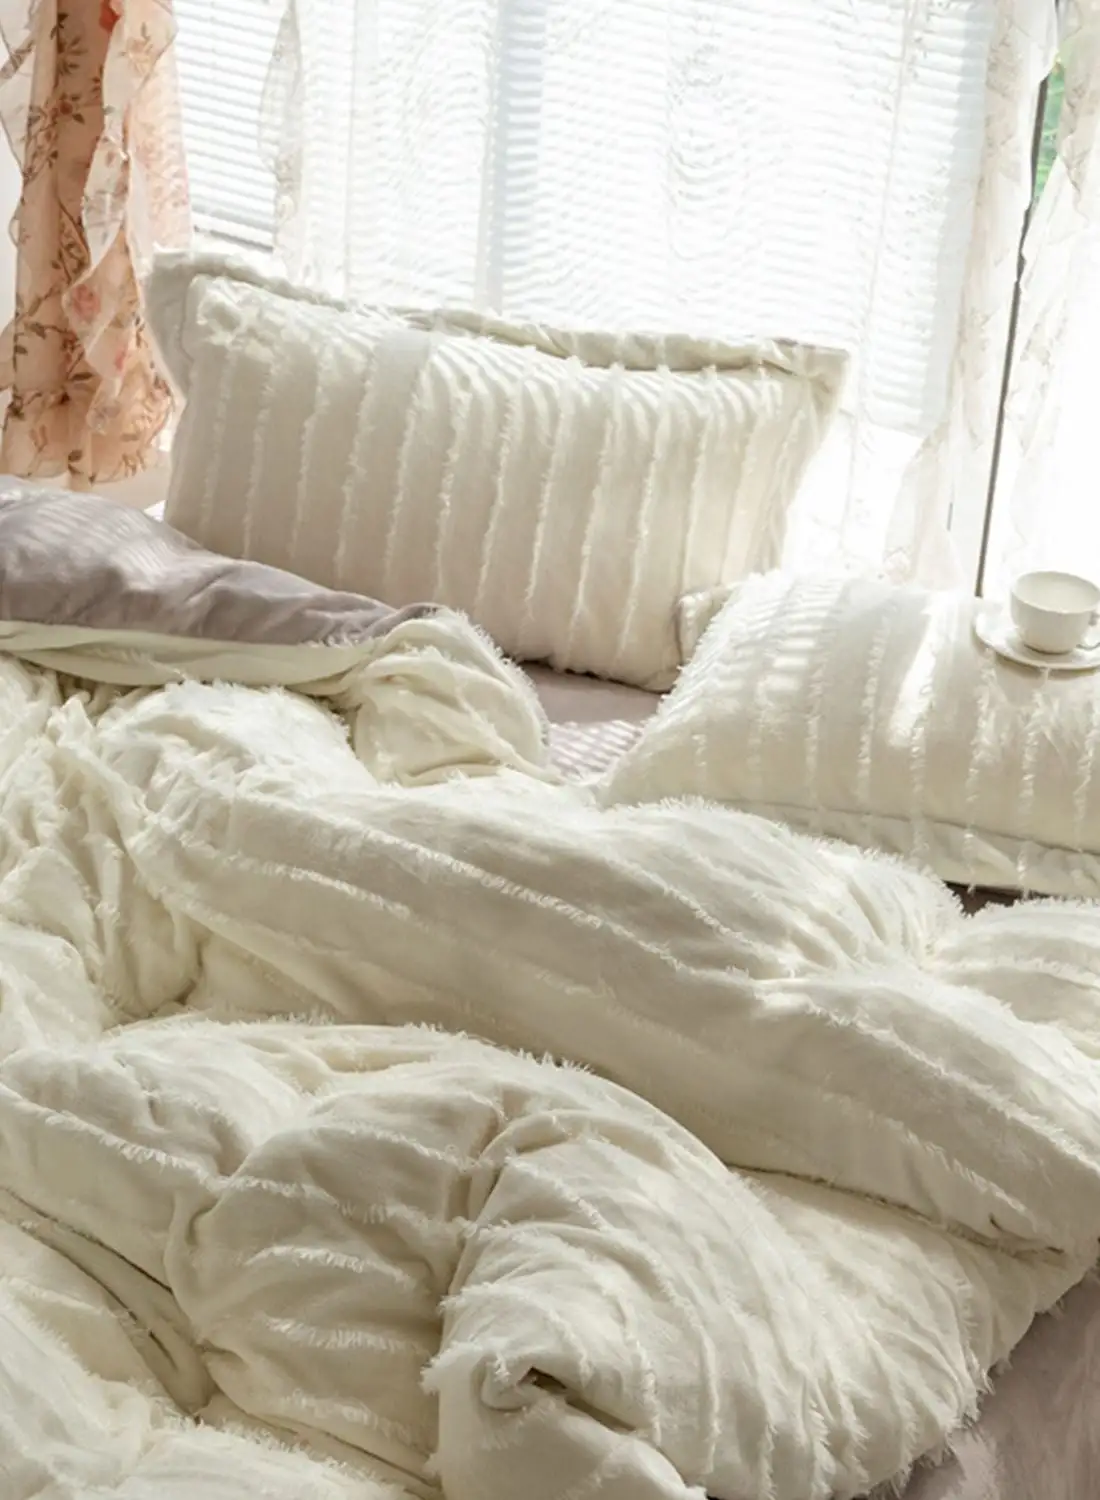 طقم سرير كينج منقوش باللون الأبيض من نوار إيديت مقاس 220 × 240 سم